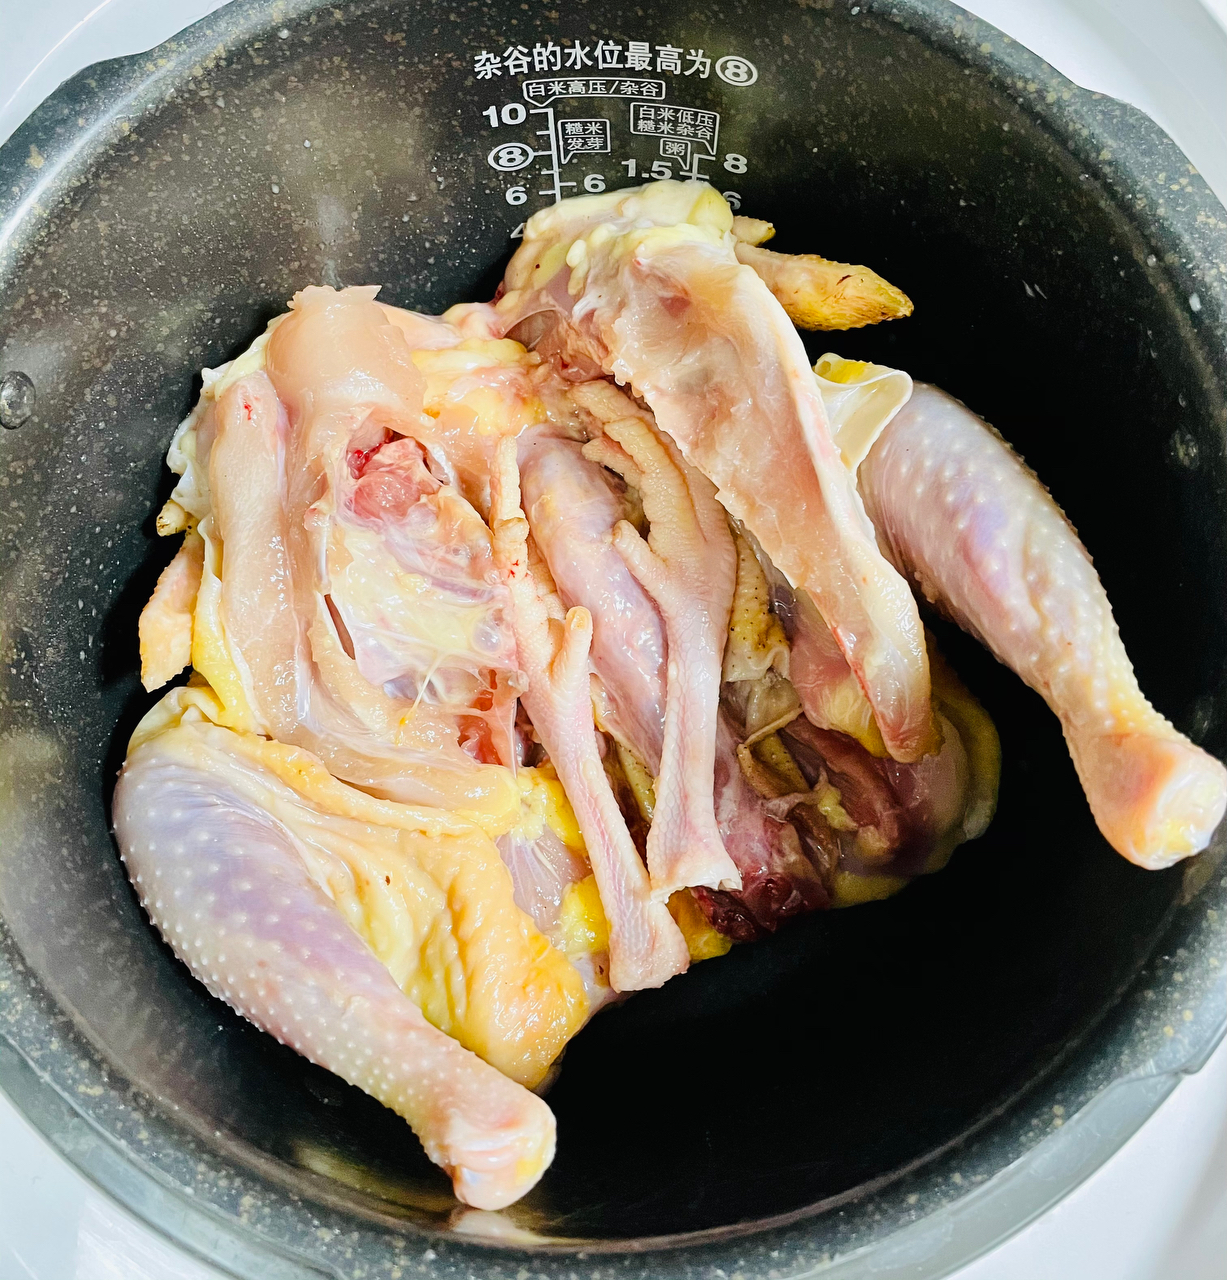 电饭煲版盐焗鸡